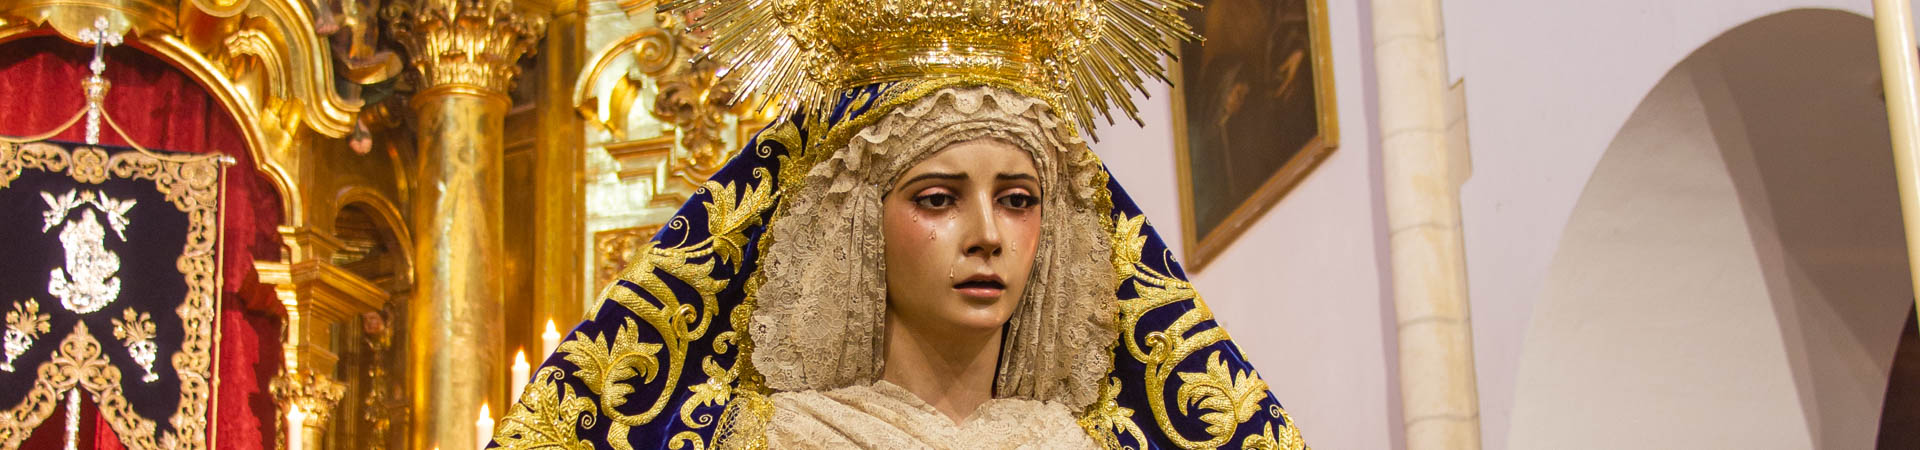 Besamanos Virgen 2019 angulo abajo cabecera